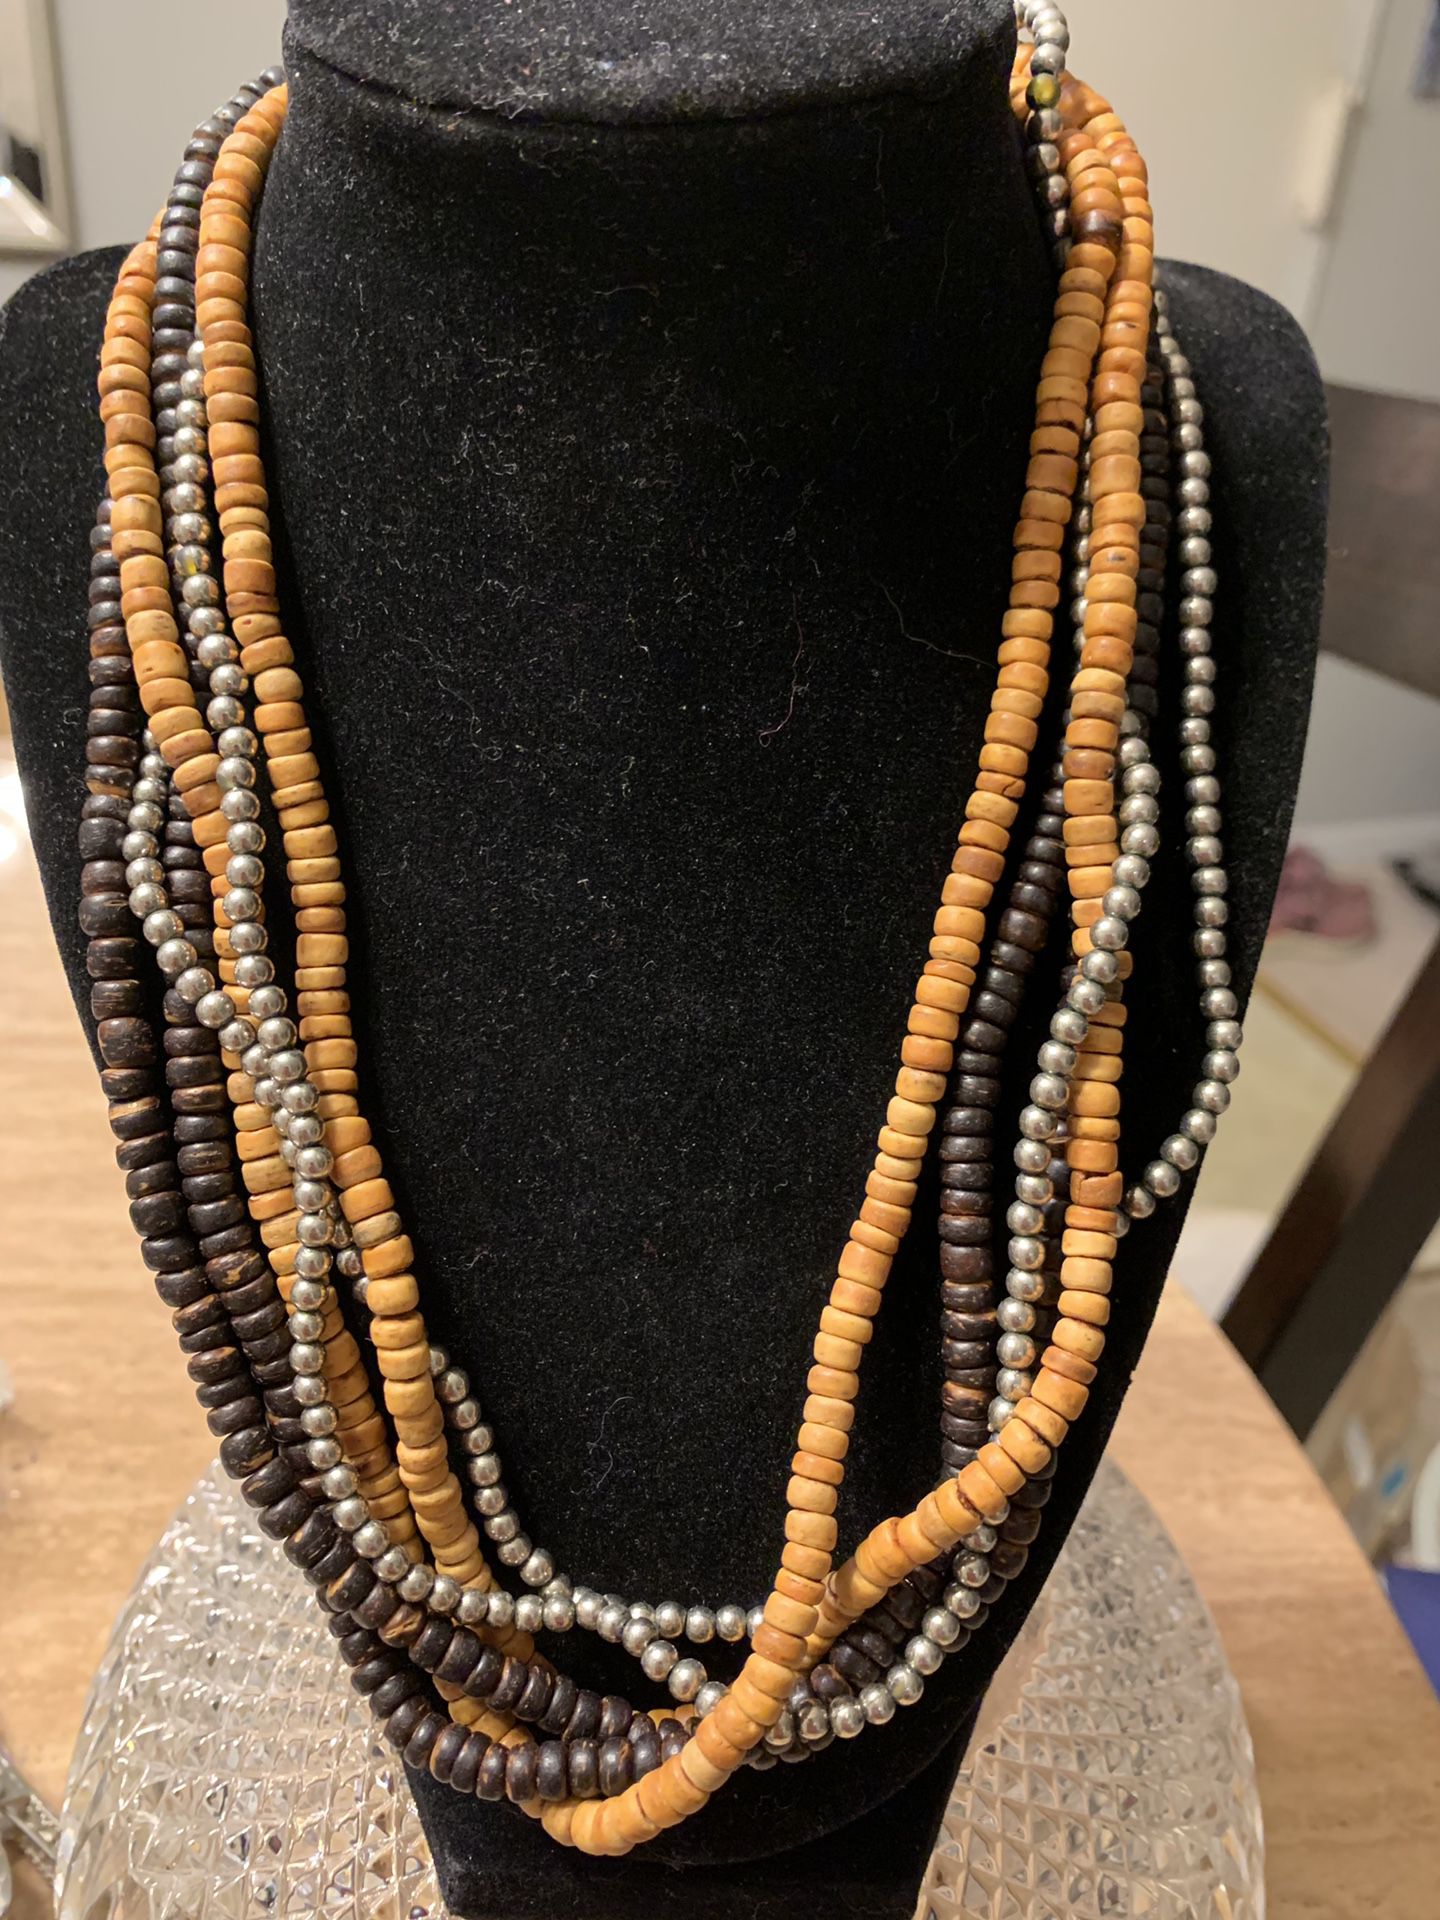 Women’s necklaces